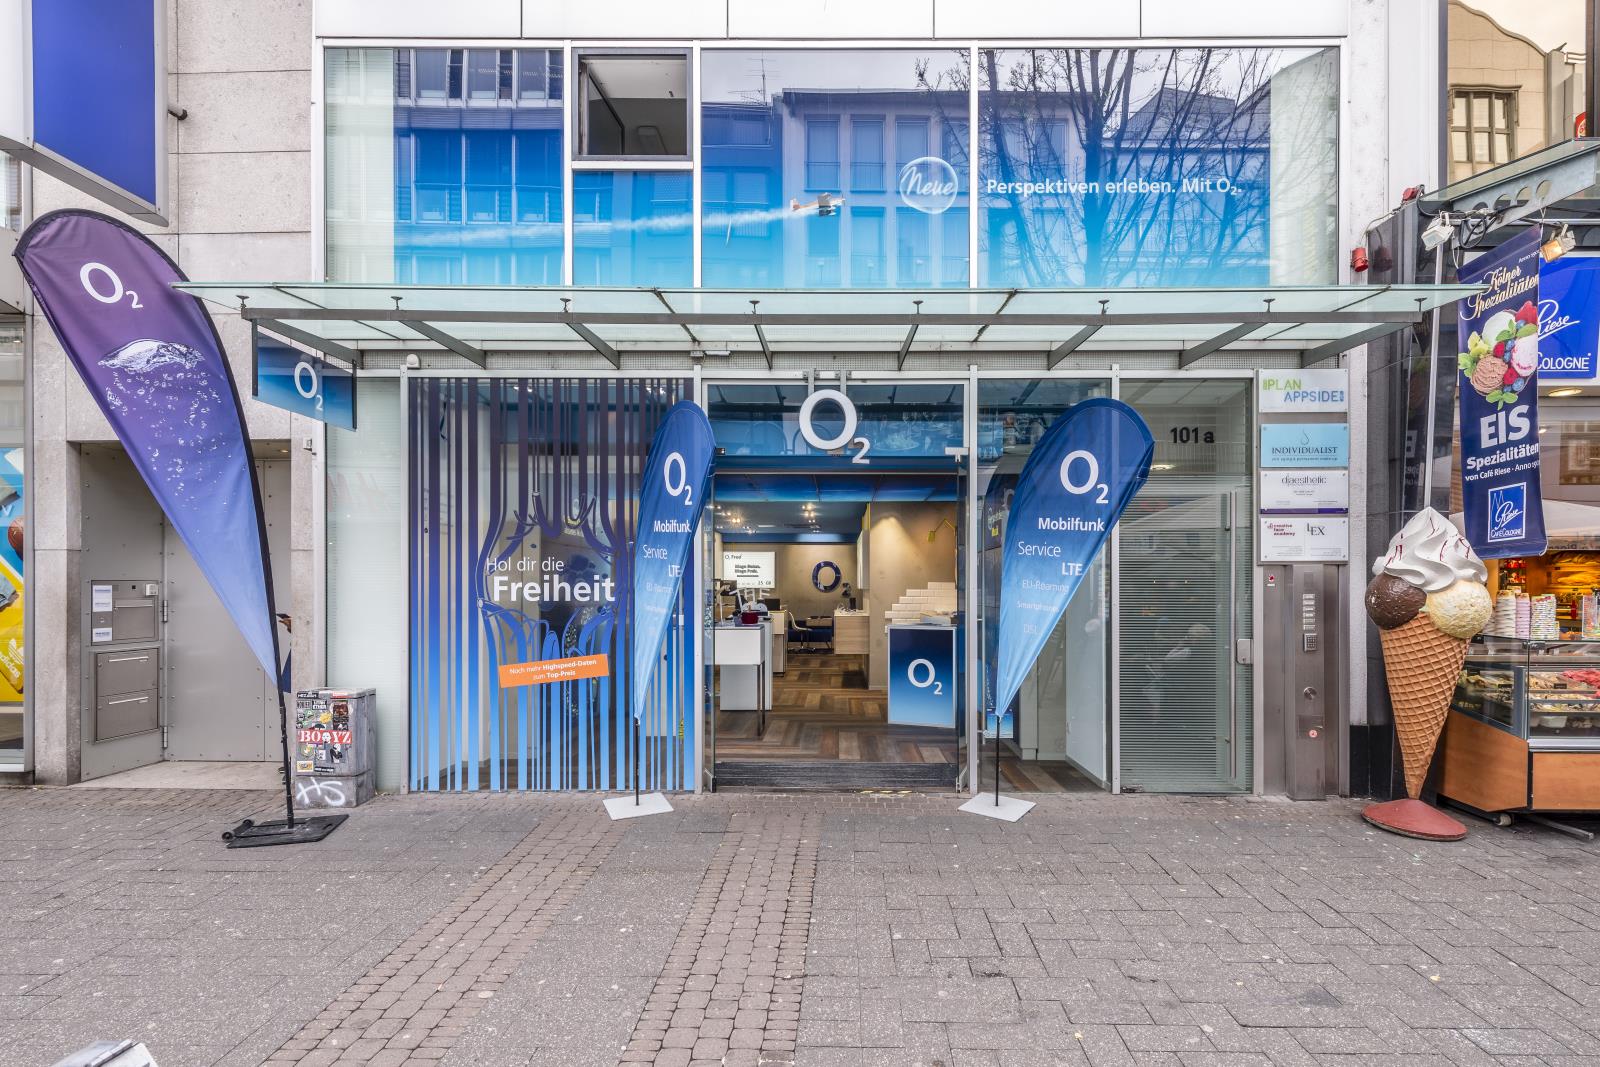 o2 Shop, Schildergasse 101a in Köln